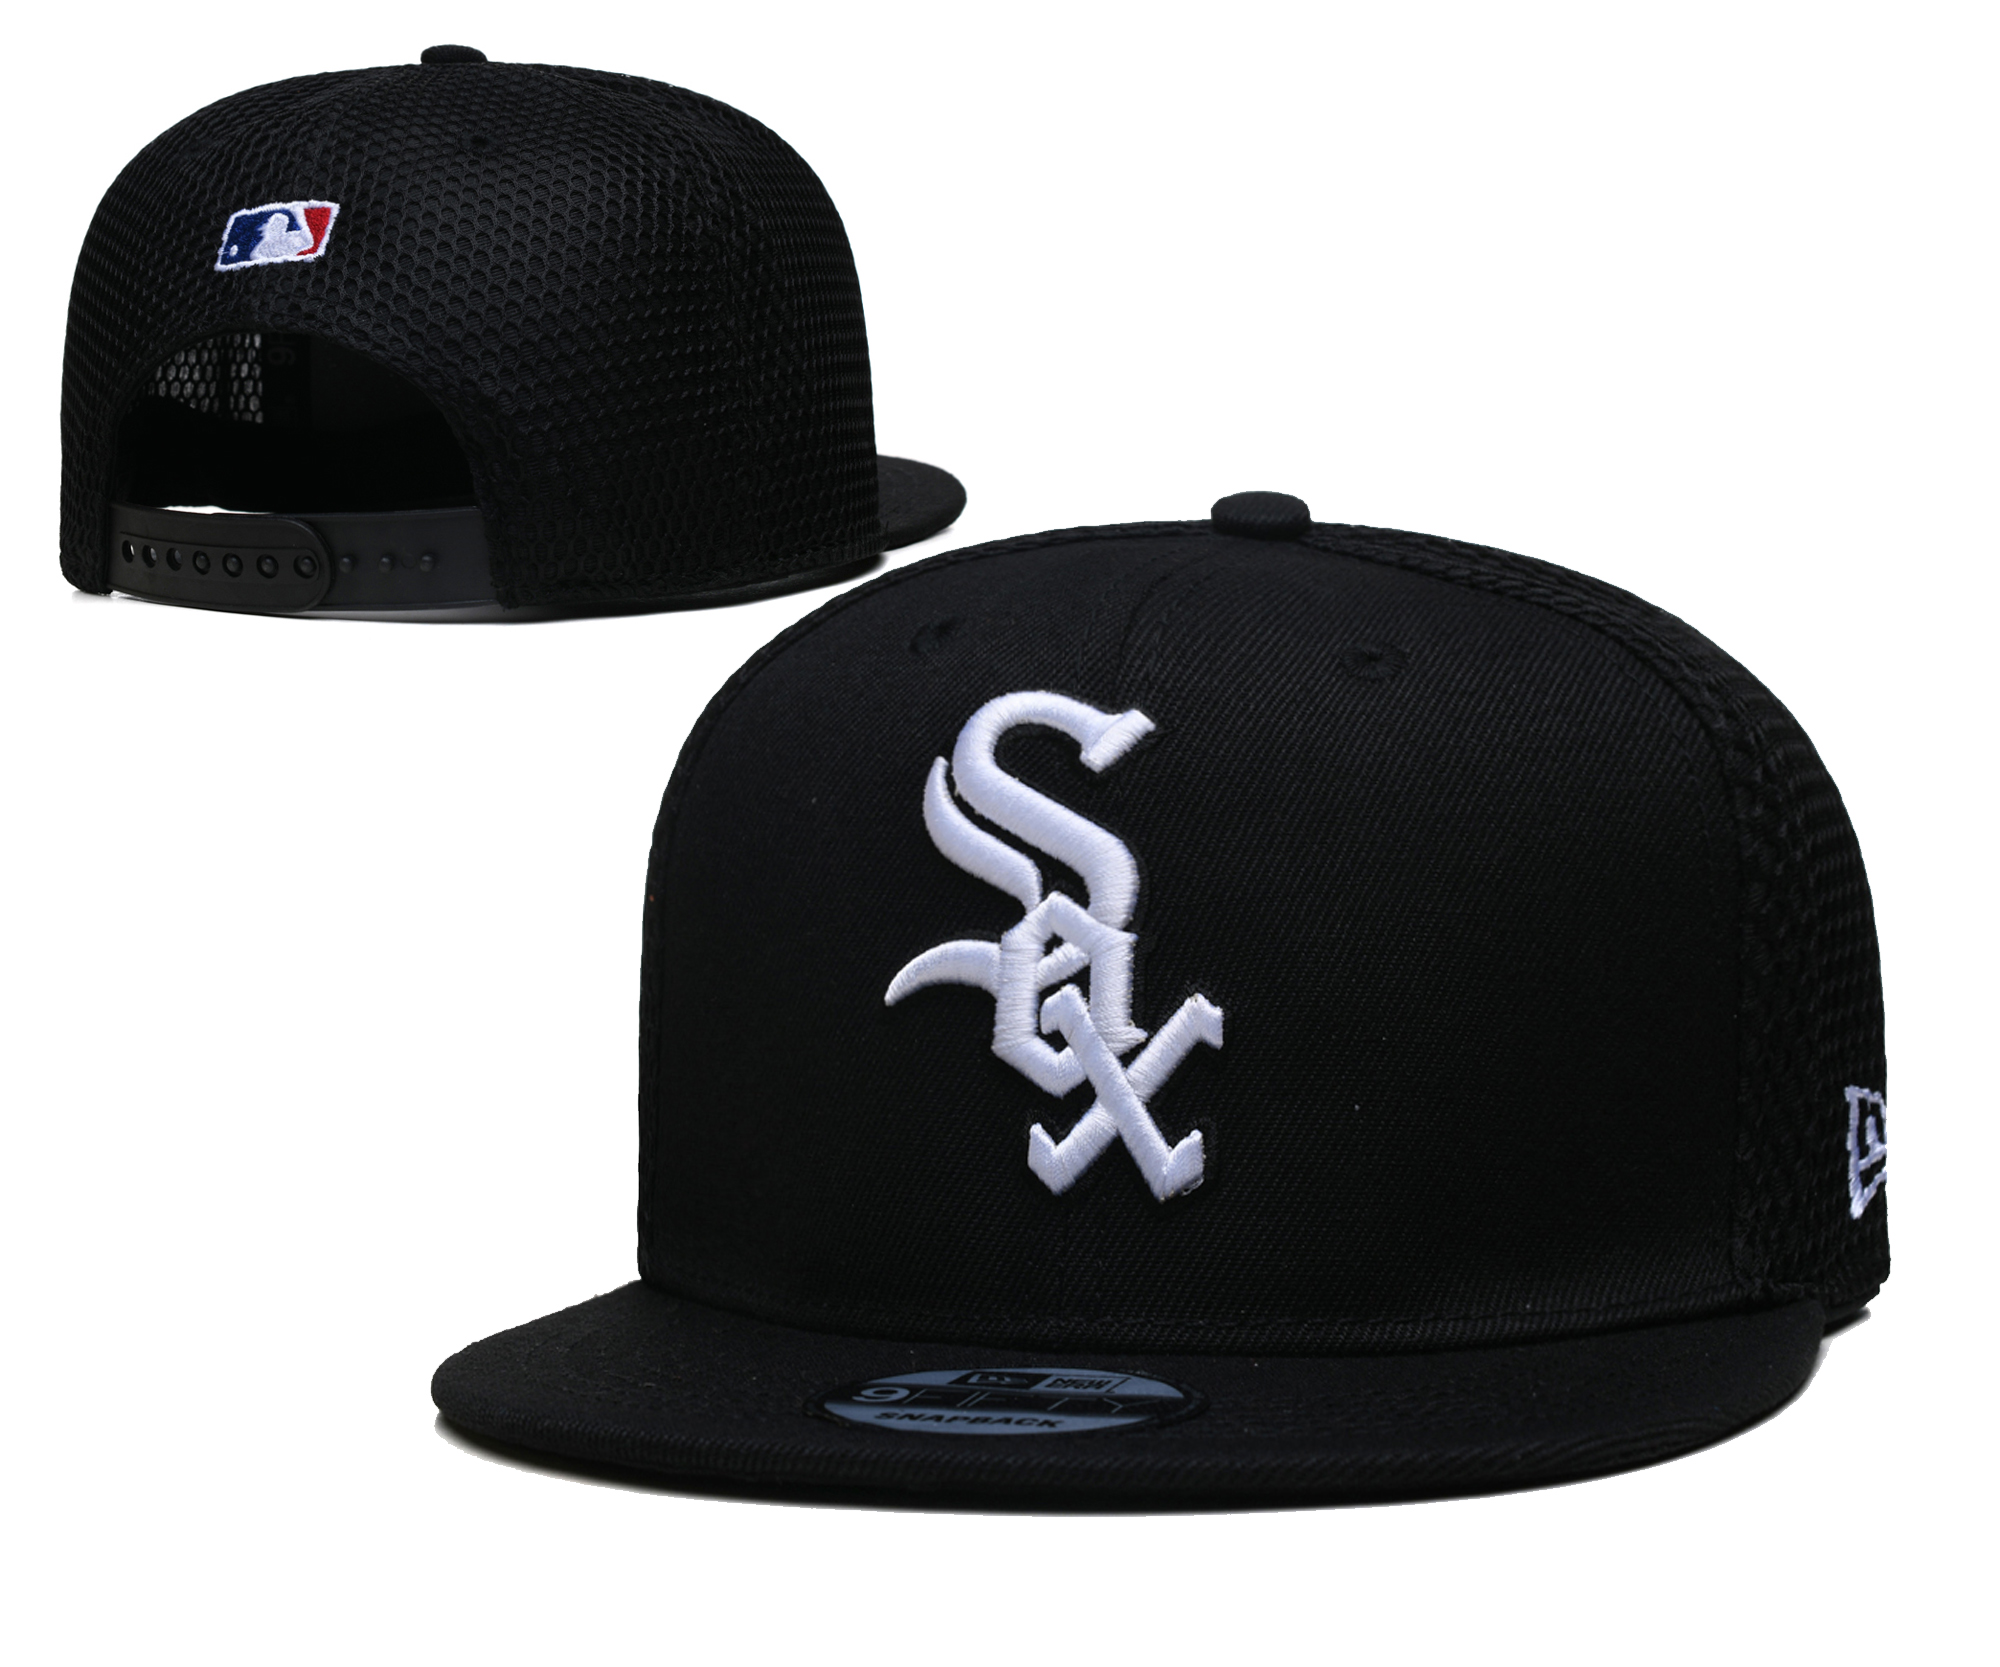 2021 MLB Chicago White Sox #25 TX hat